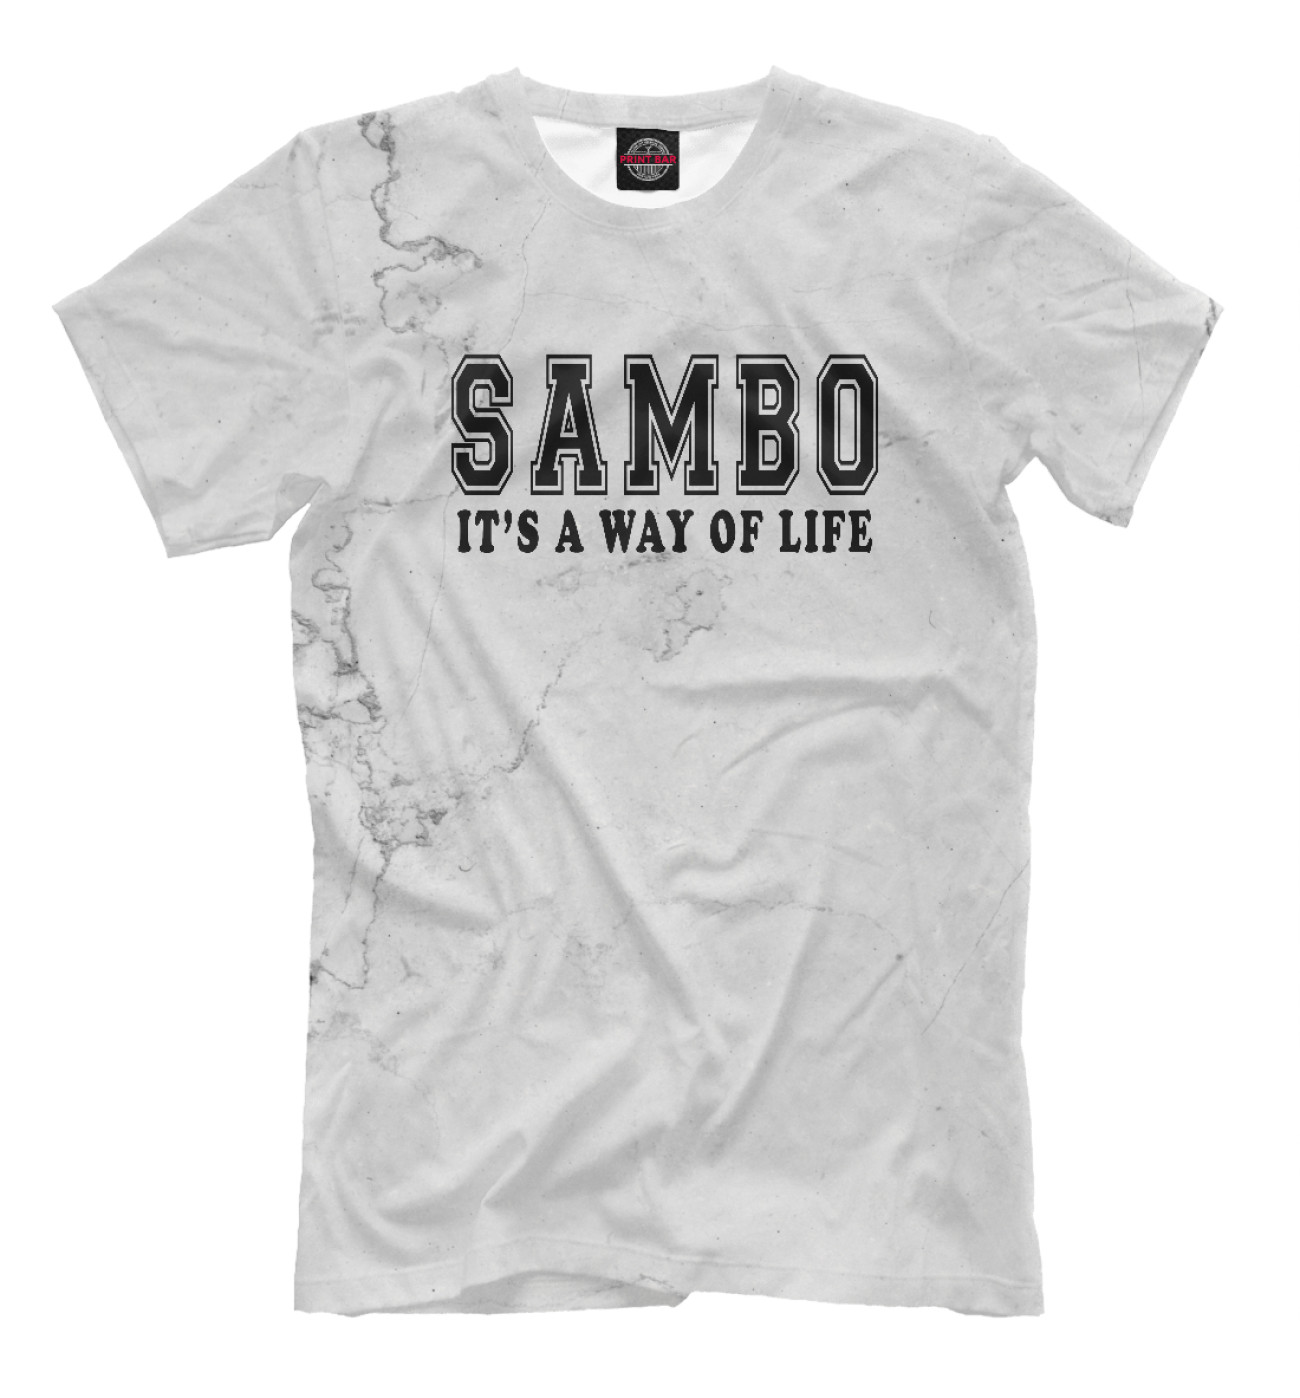 Мужская Футболка Sambo It's way of life, артикул: SMB-768116-fut-2